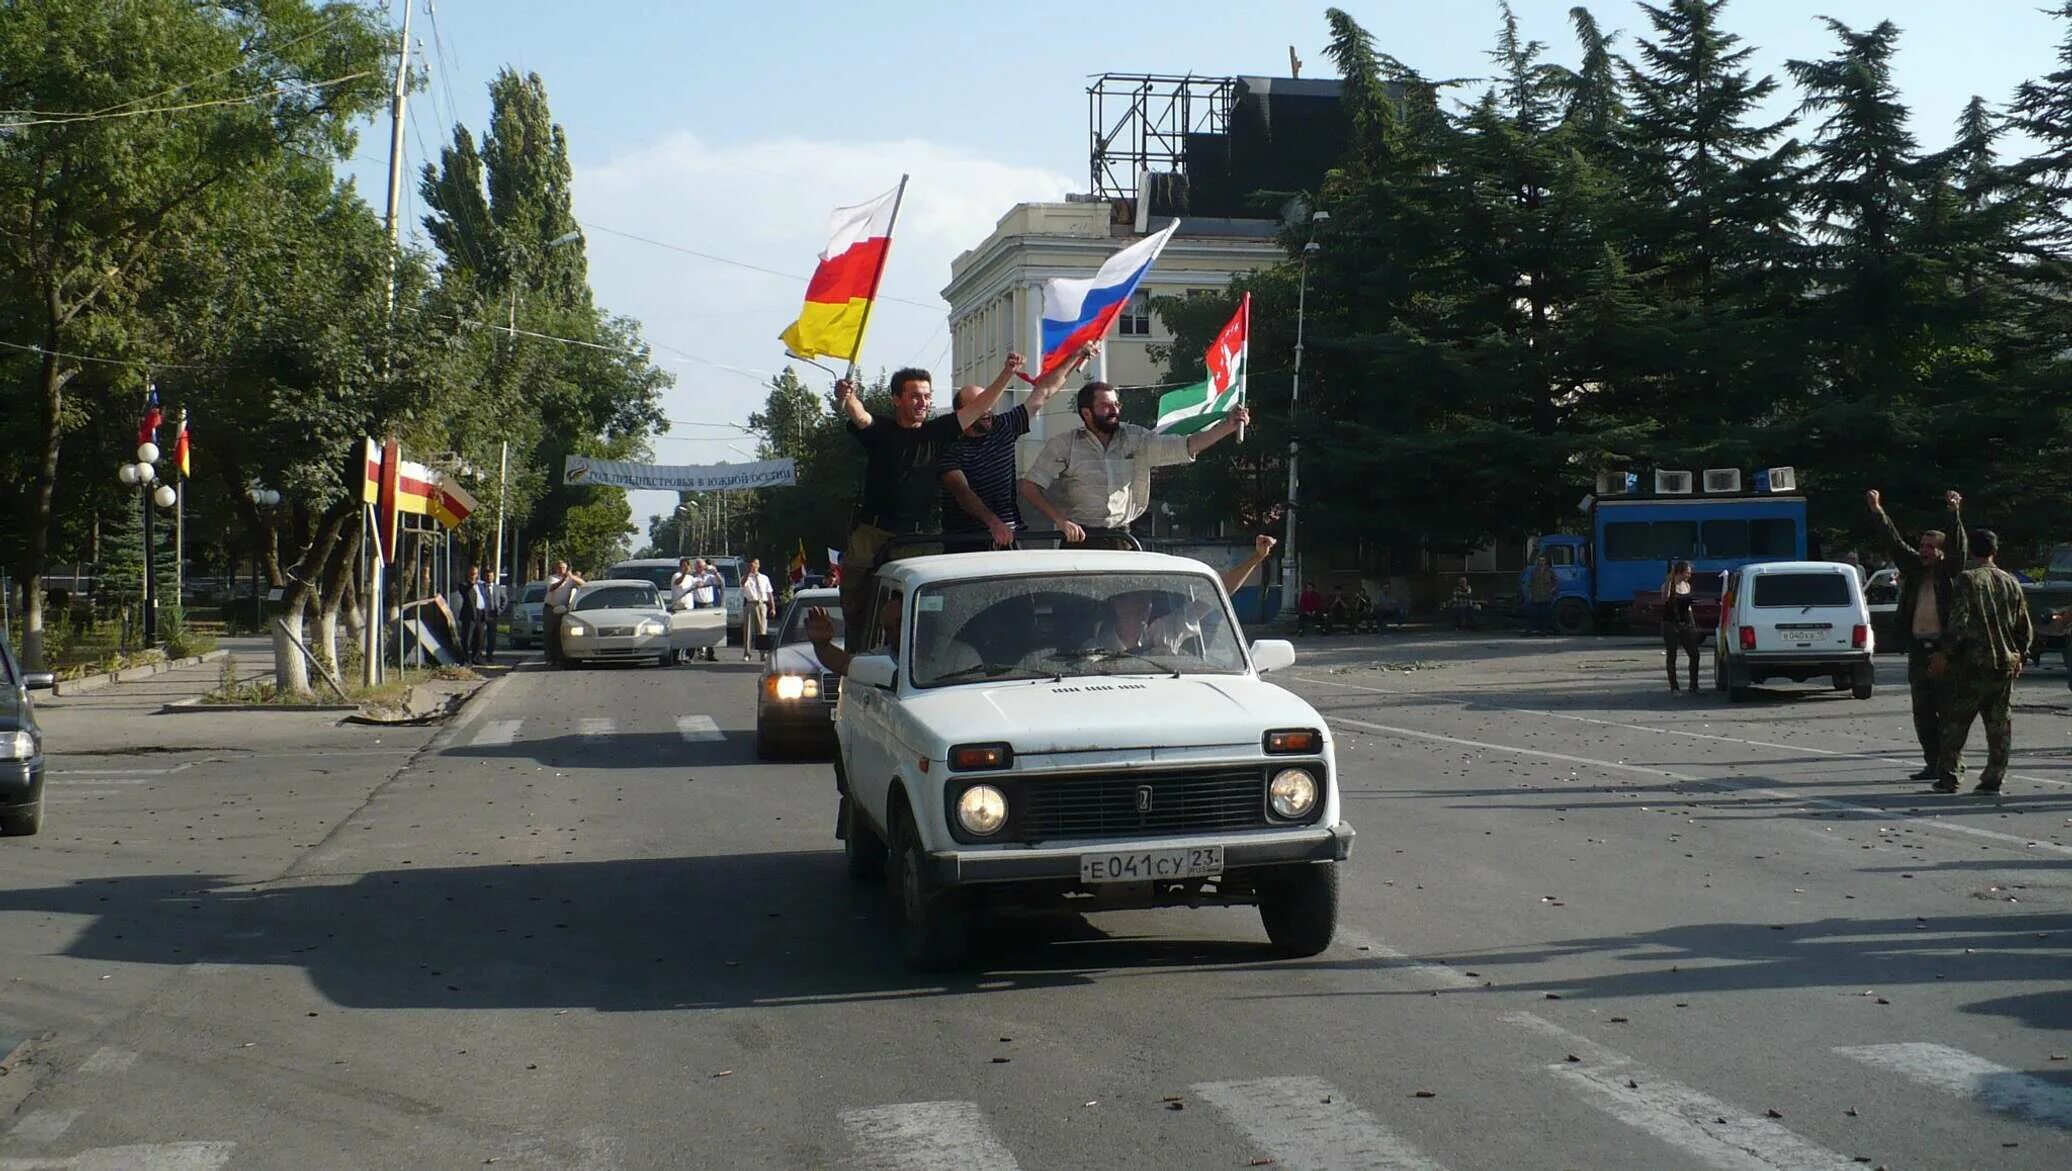 Южная осетия рф. Независимость Абхазии и Южной Осетии 2008. Цхинвал август 2008. 26 Августа 2008 признание Россией независимости Южной Осетии и Абхазии.